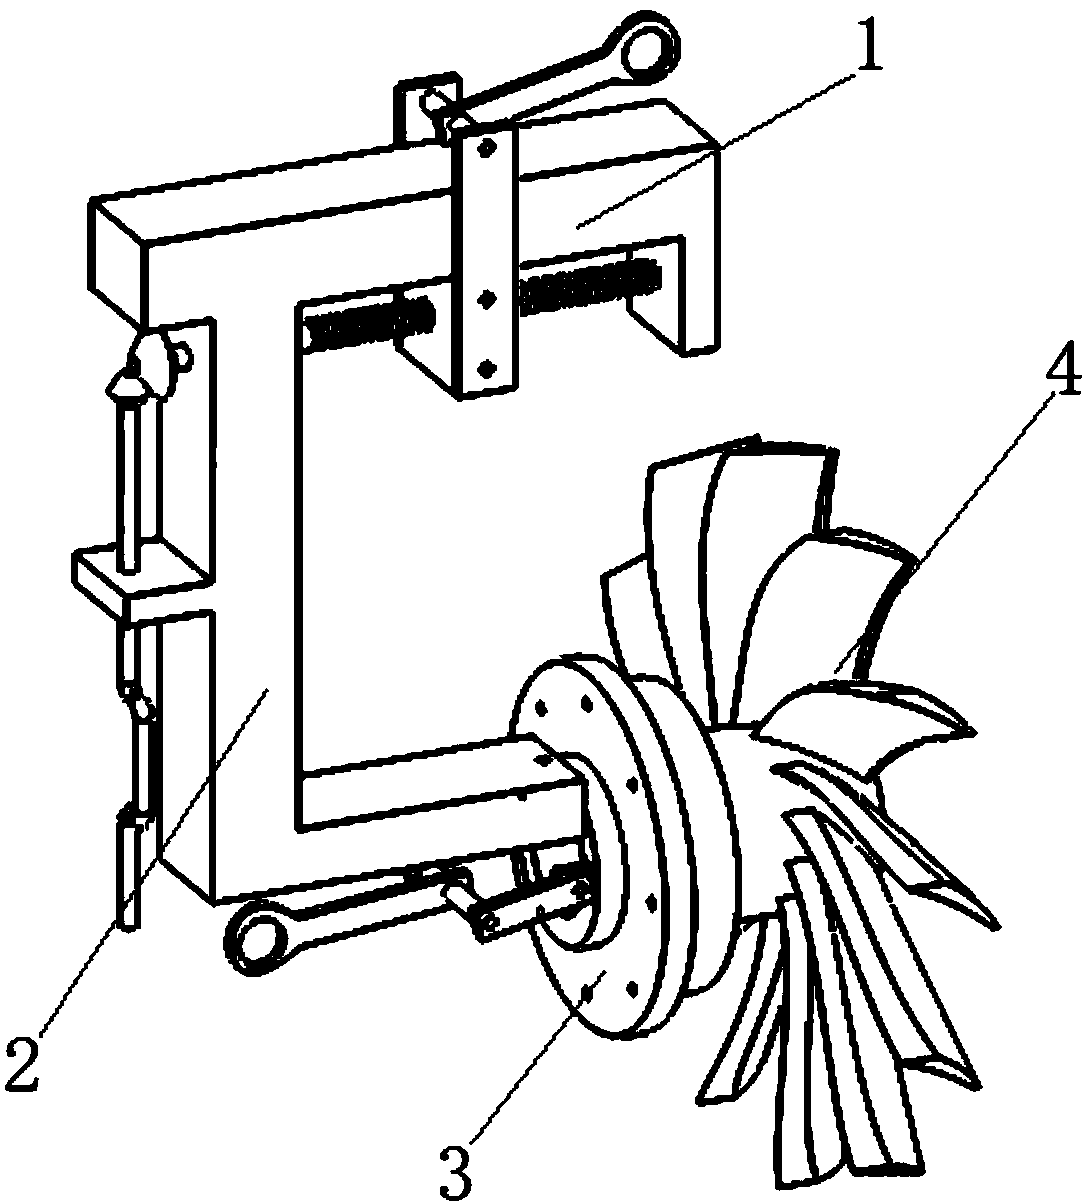 Aeroengine rotor part turning device